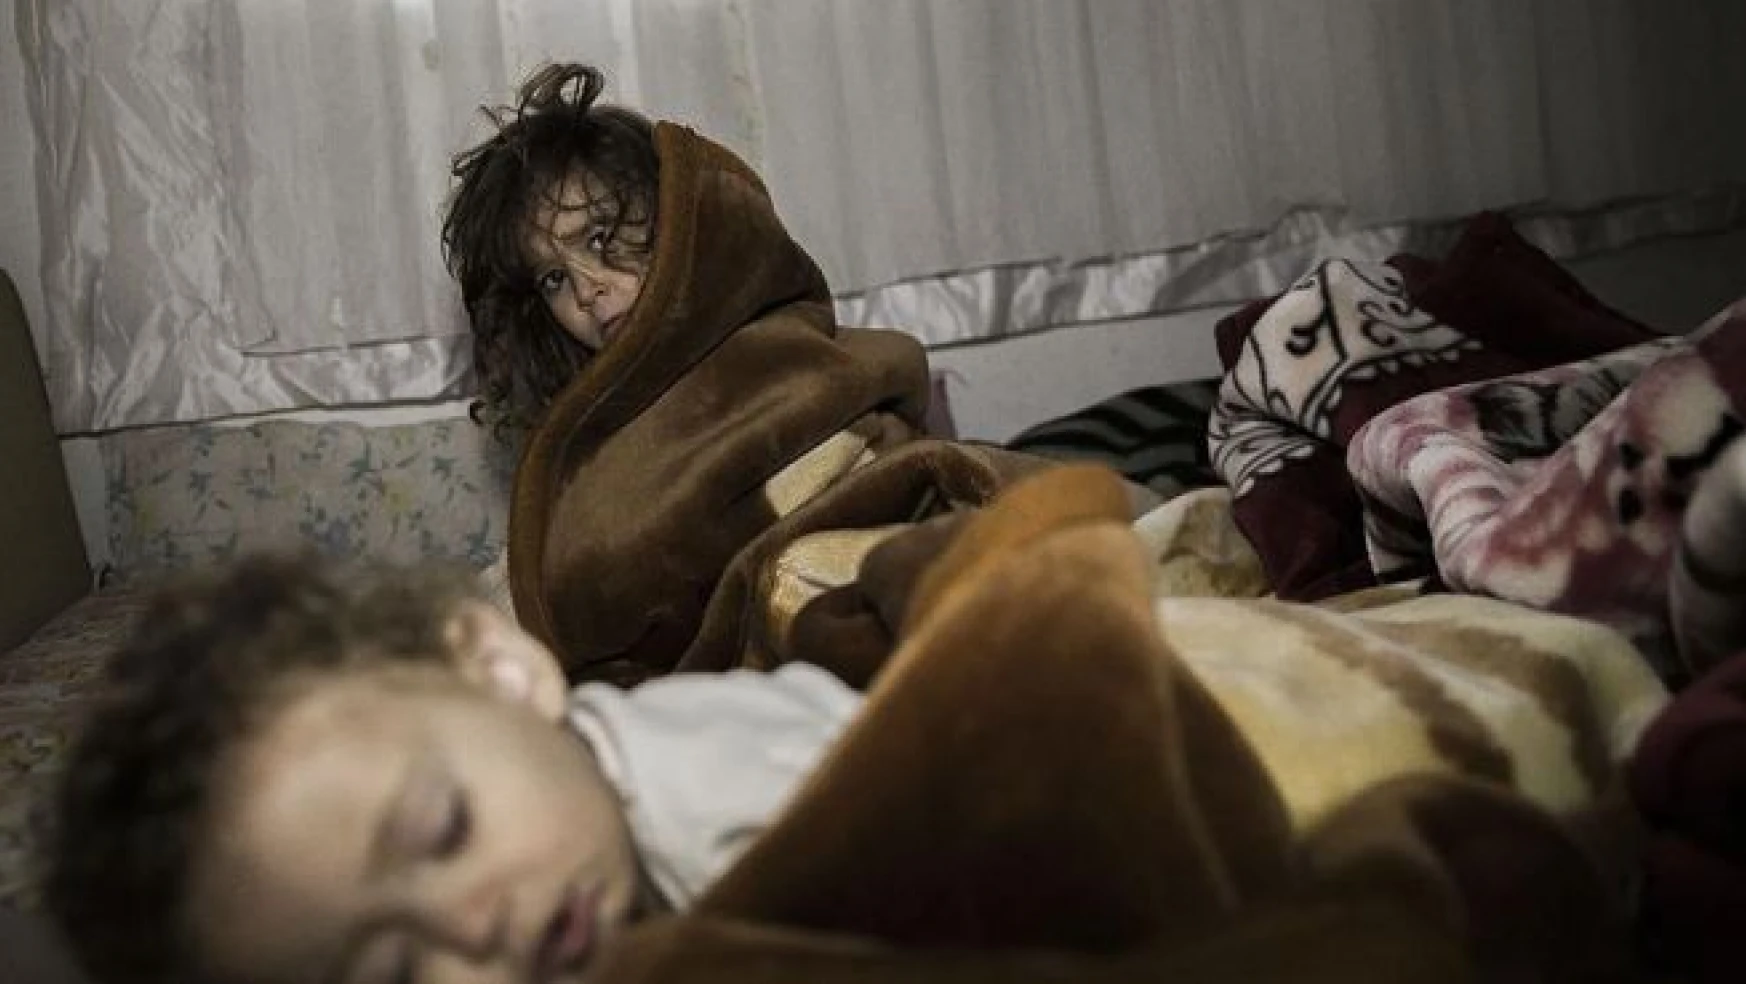 AP'de Suriyeli sığınmacı belgeseli gösterildi